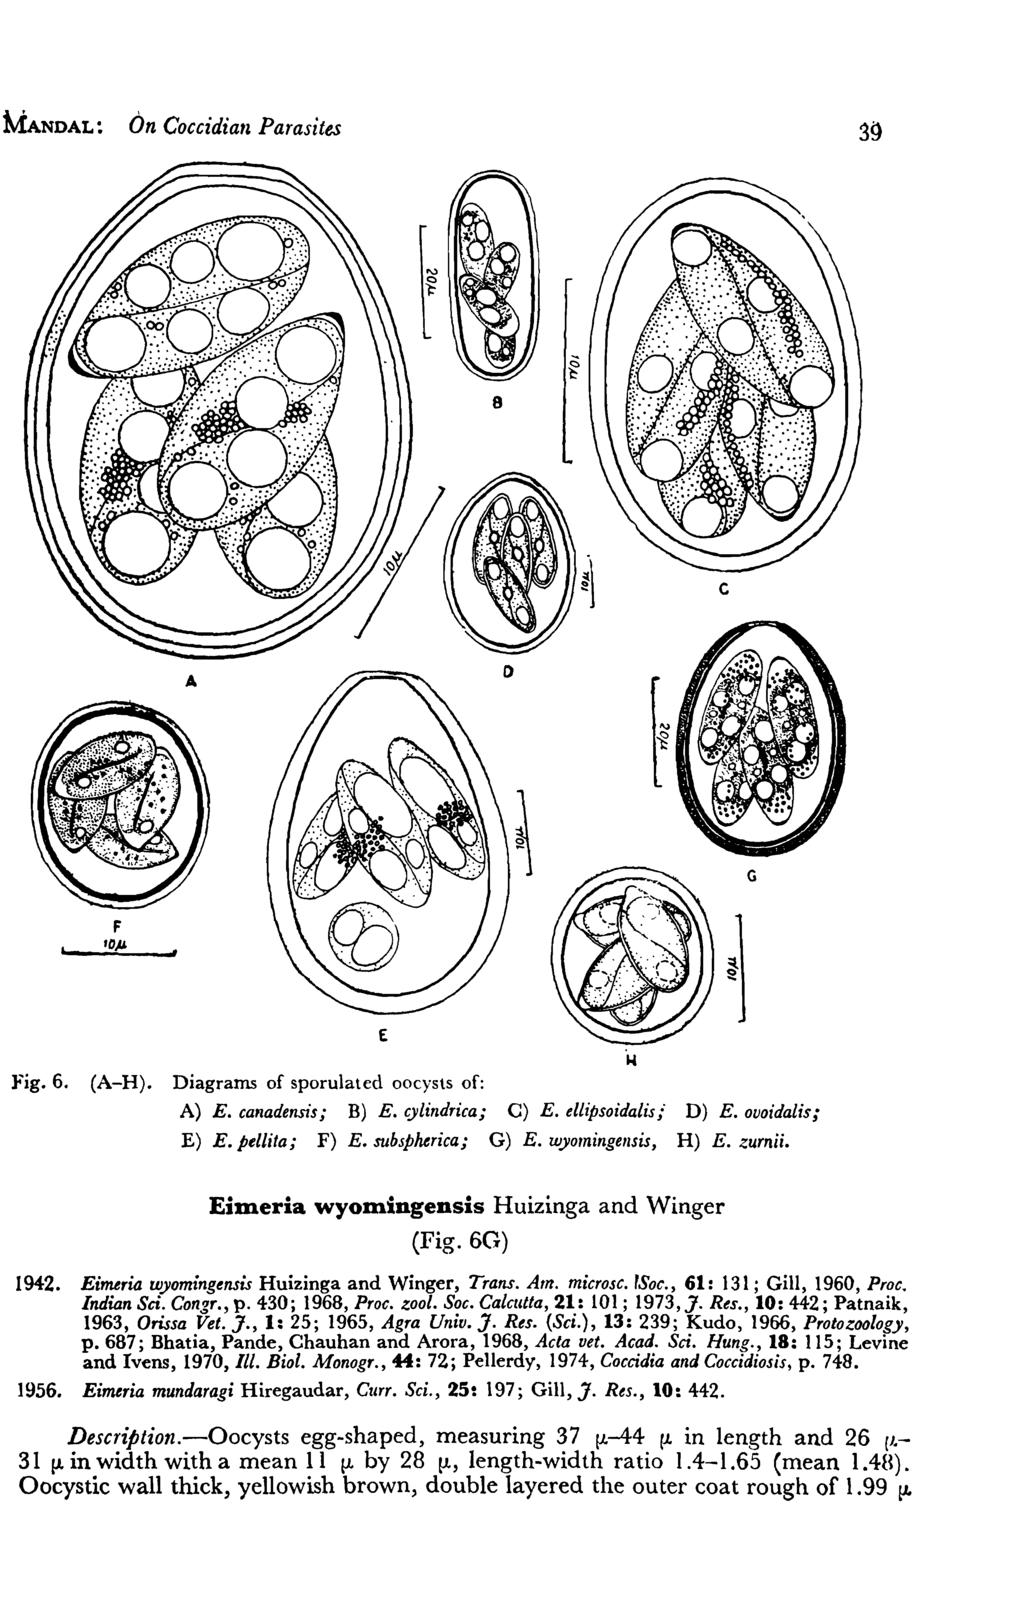 MANDAL: On Coccidia" Parasites G F fop ~l E Fig. 6. (A-H). Diagrams of sporulated oocysts of: A) E. canadensis; B) E. cylindrica; C) E. ellipsoidalis;" D) E.ovoidalis; E) E. pellita; F) E.